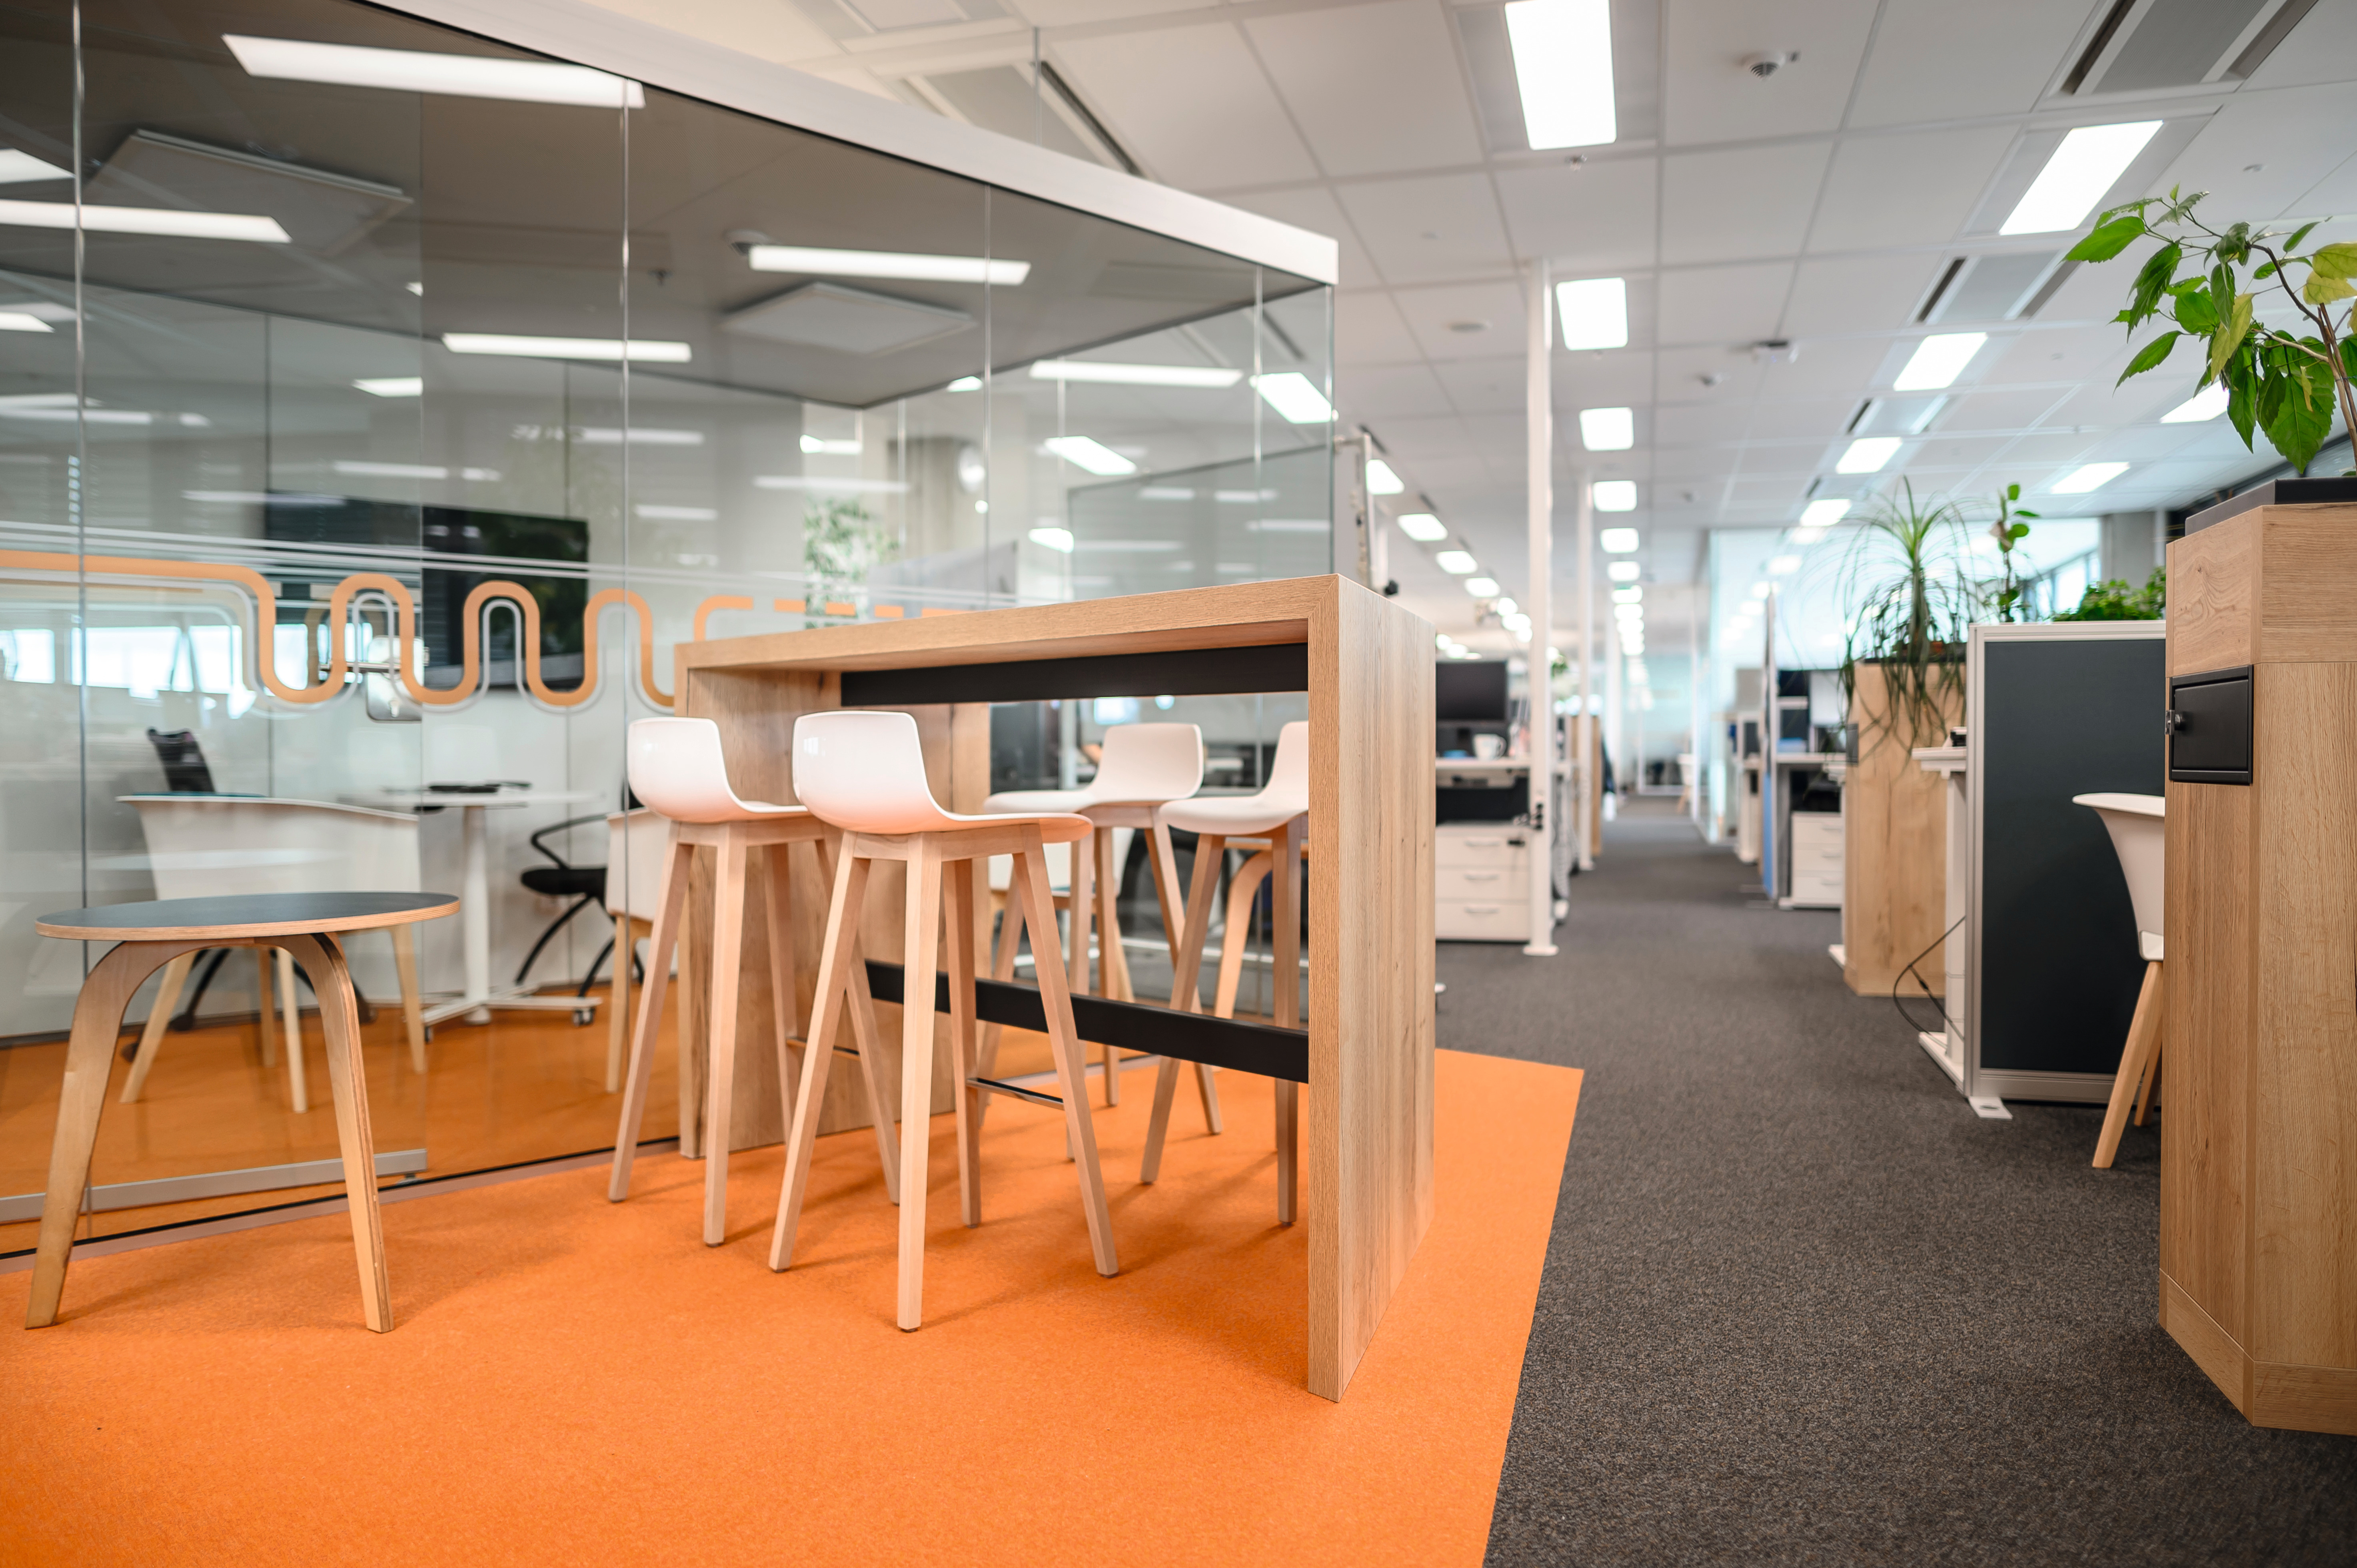 Уникальное, современное и функциональное оснащение интерьеров офисных помещений.